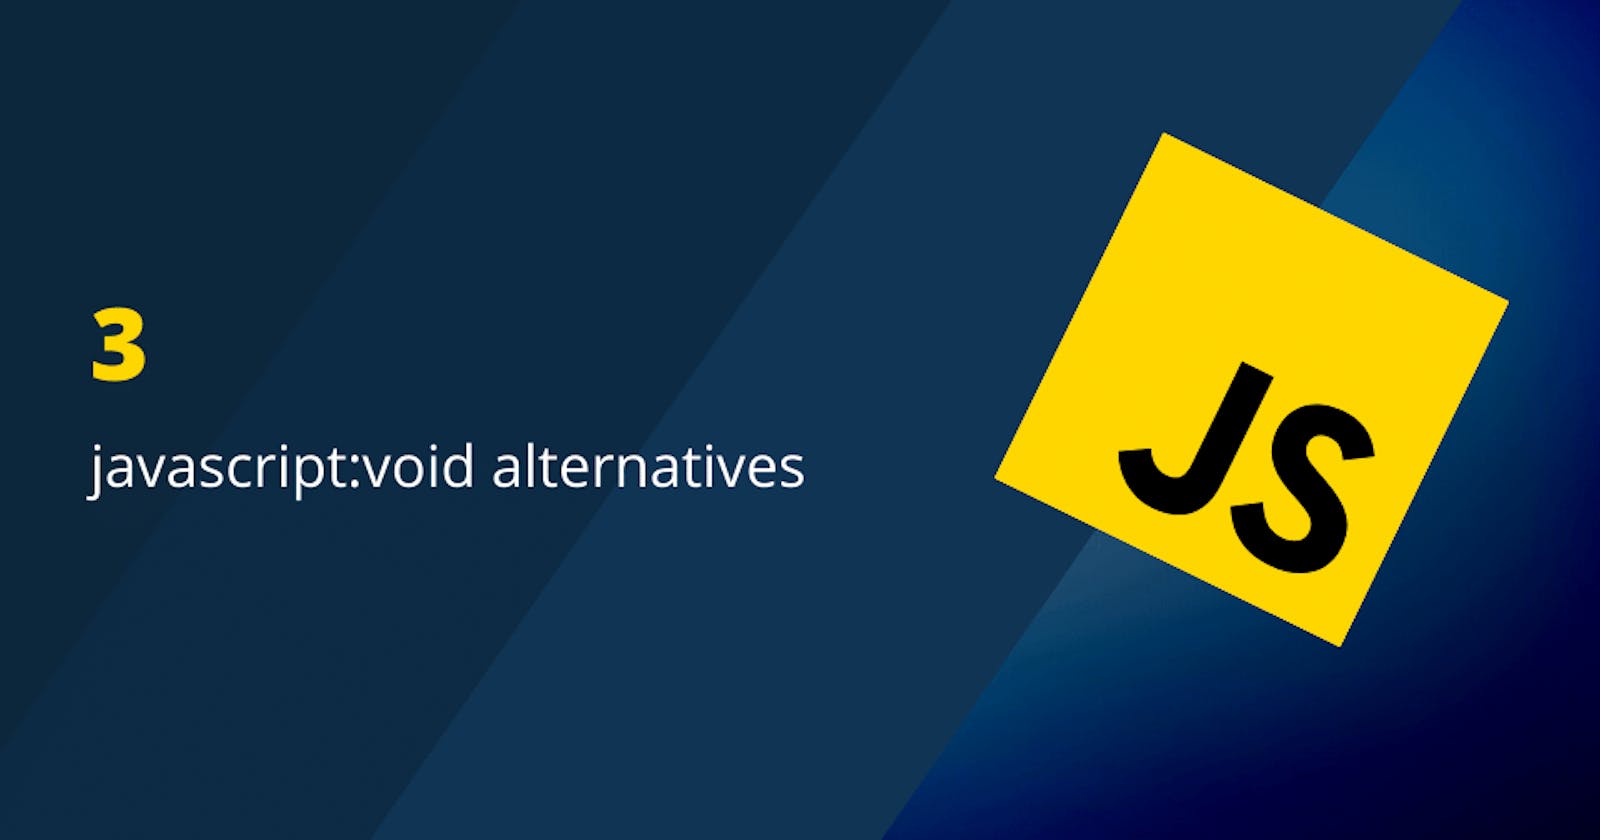 3 javaScript:void alternatives